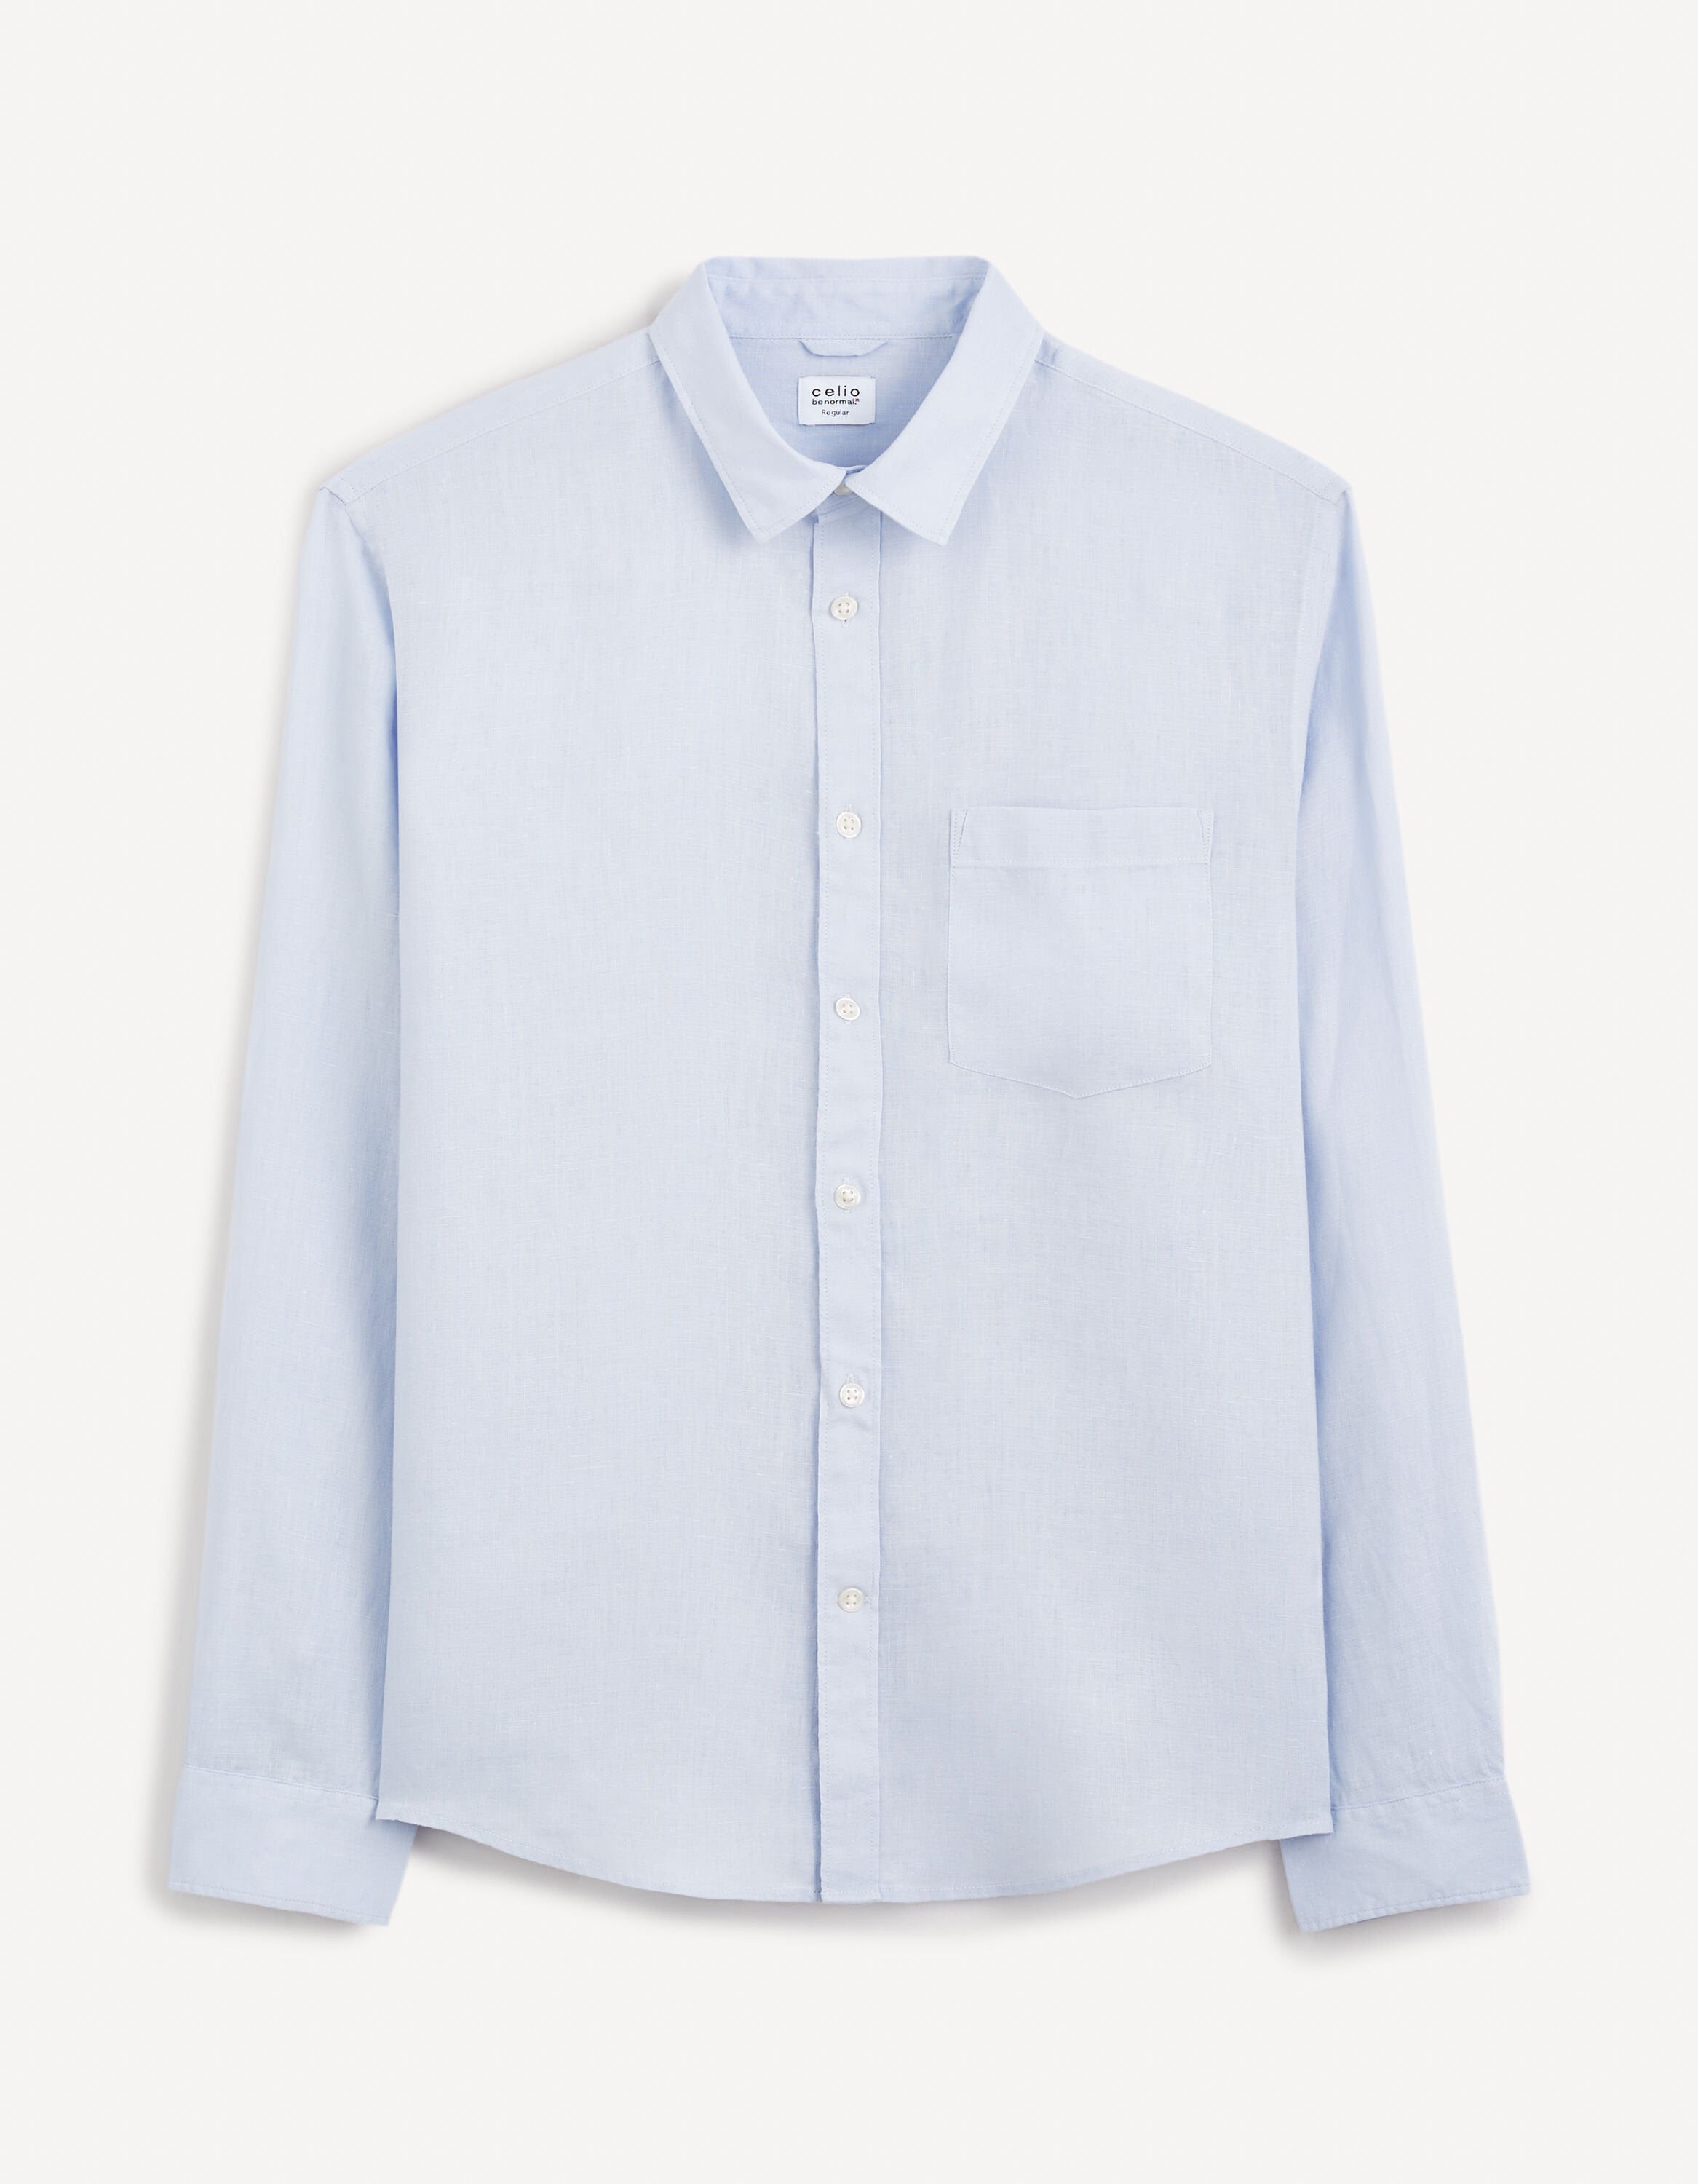 Regular Shirt 100% Linen_DAFLIX_LIGHT BLUE_02